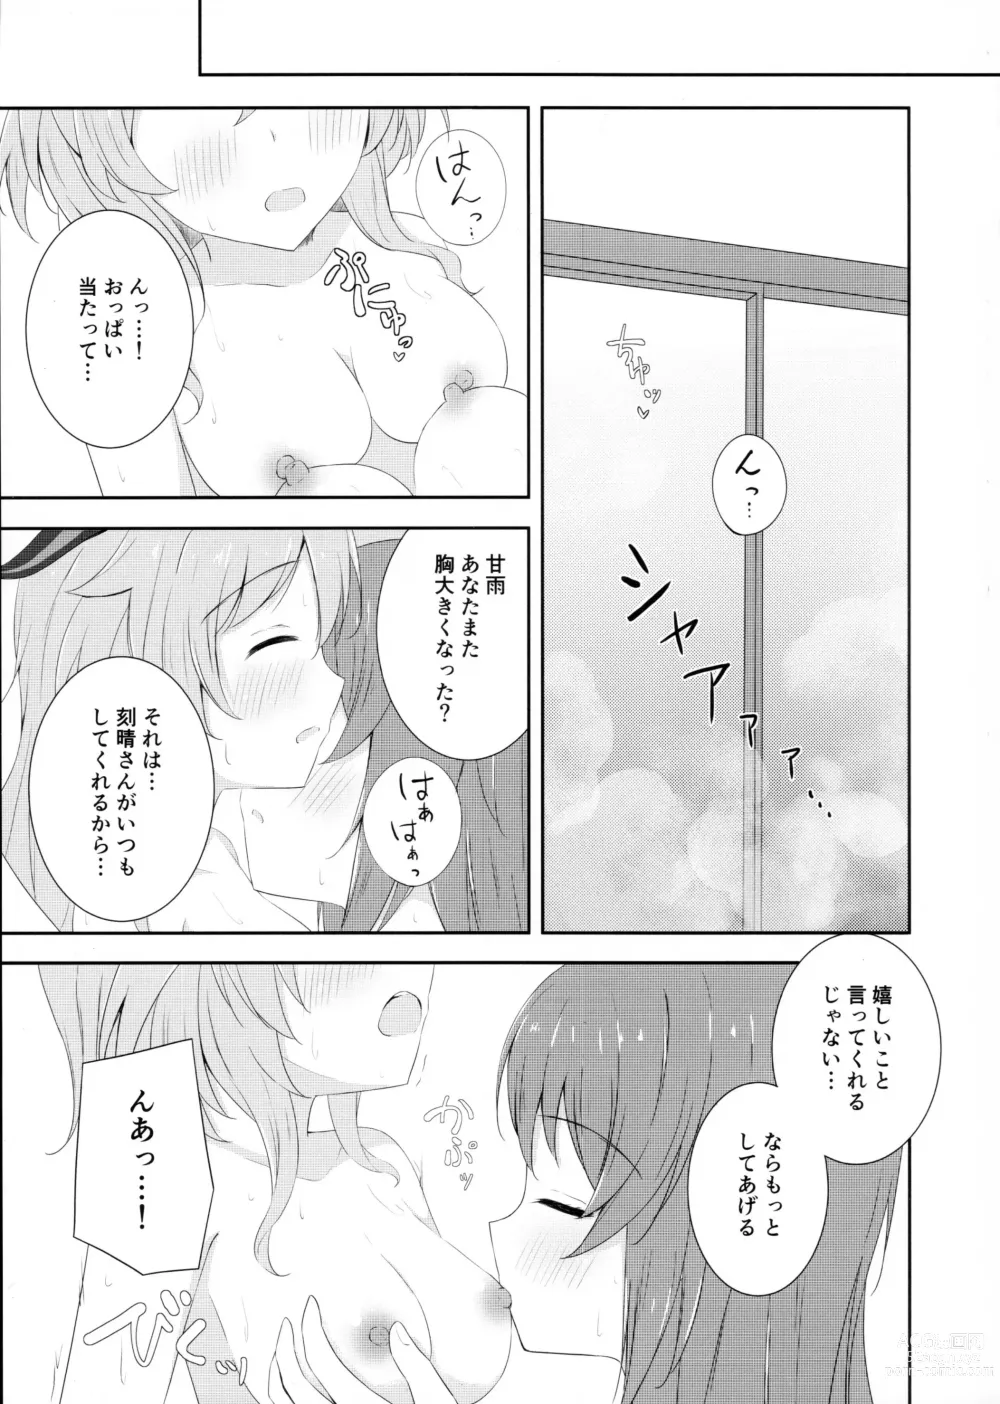 Page 8 of doujinshi KokuKan wa Echi ga Shitai!